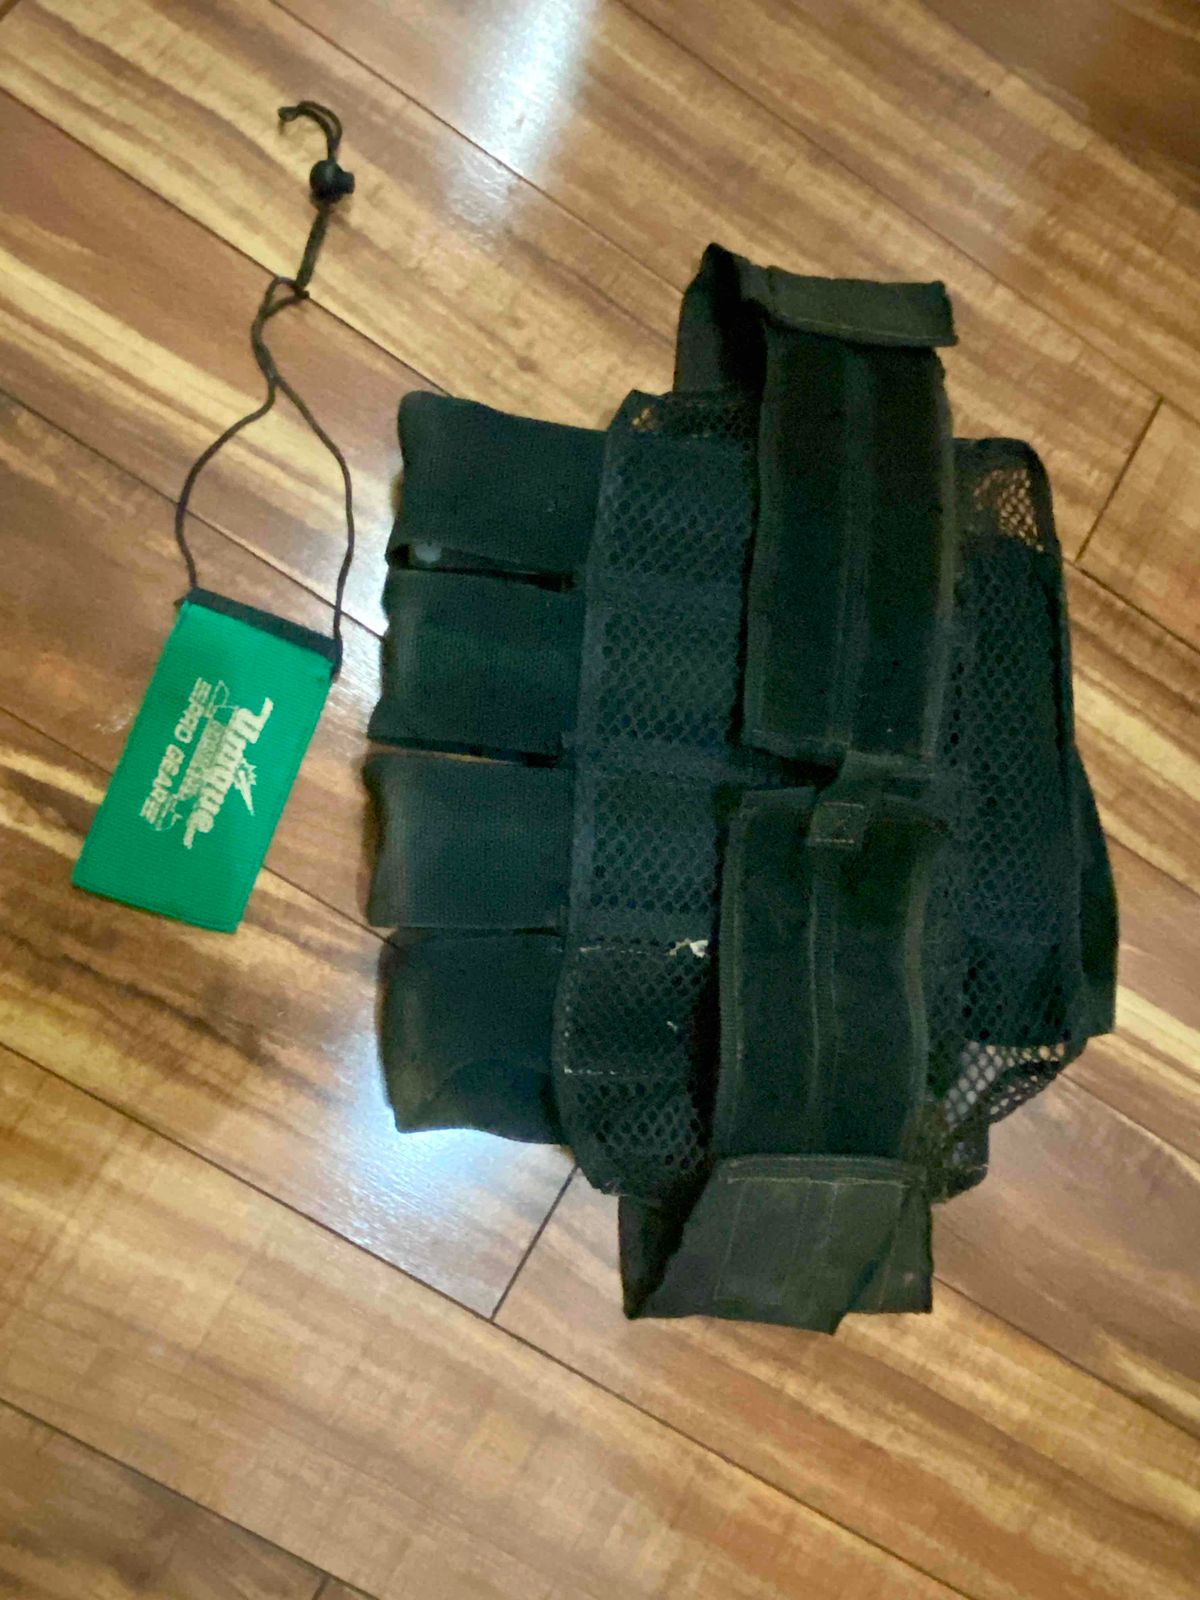 Unique vintage pod pack and barrel bag